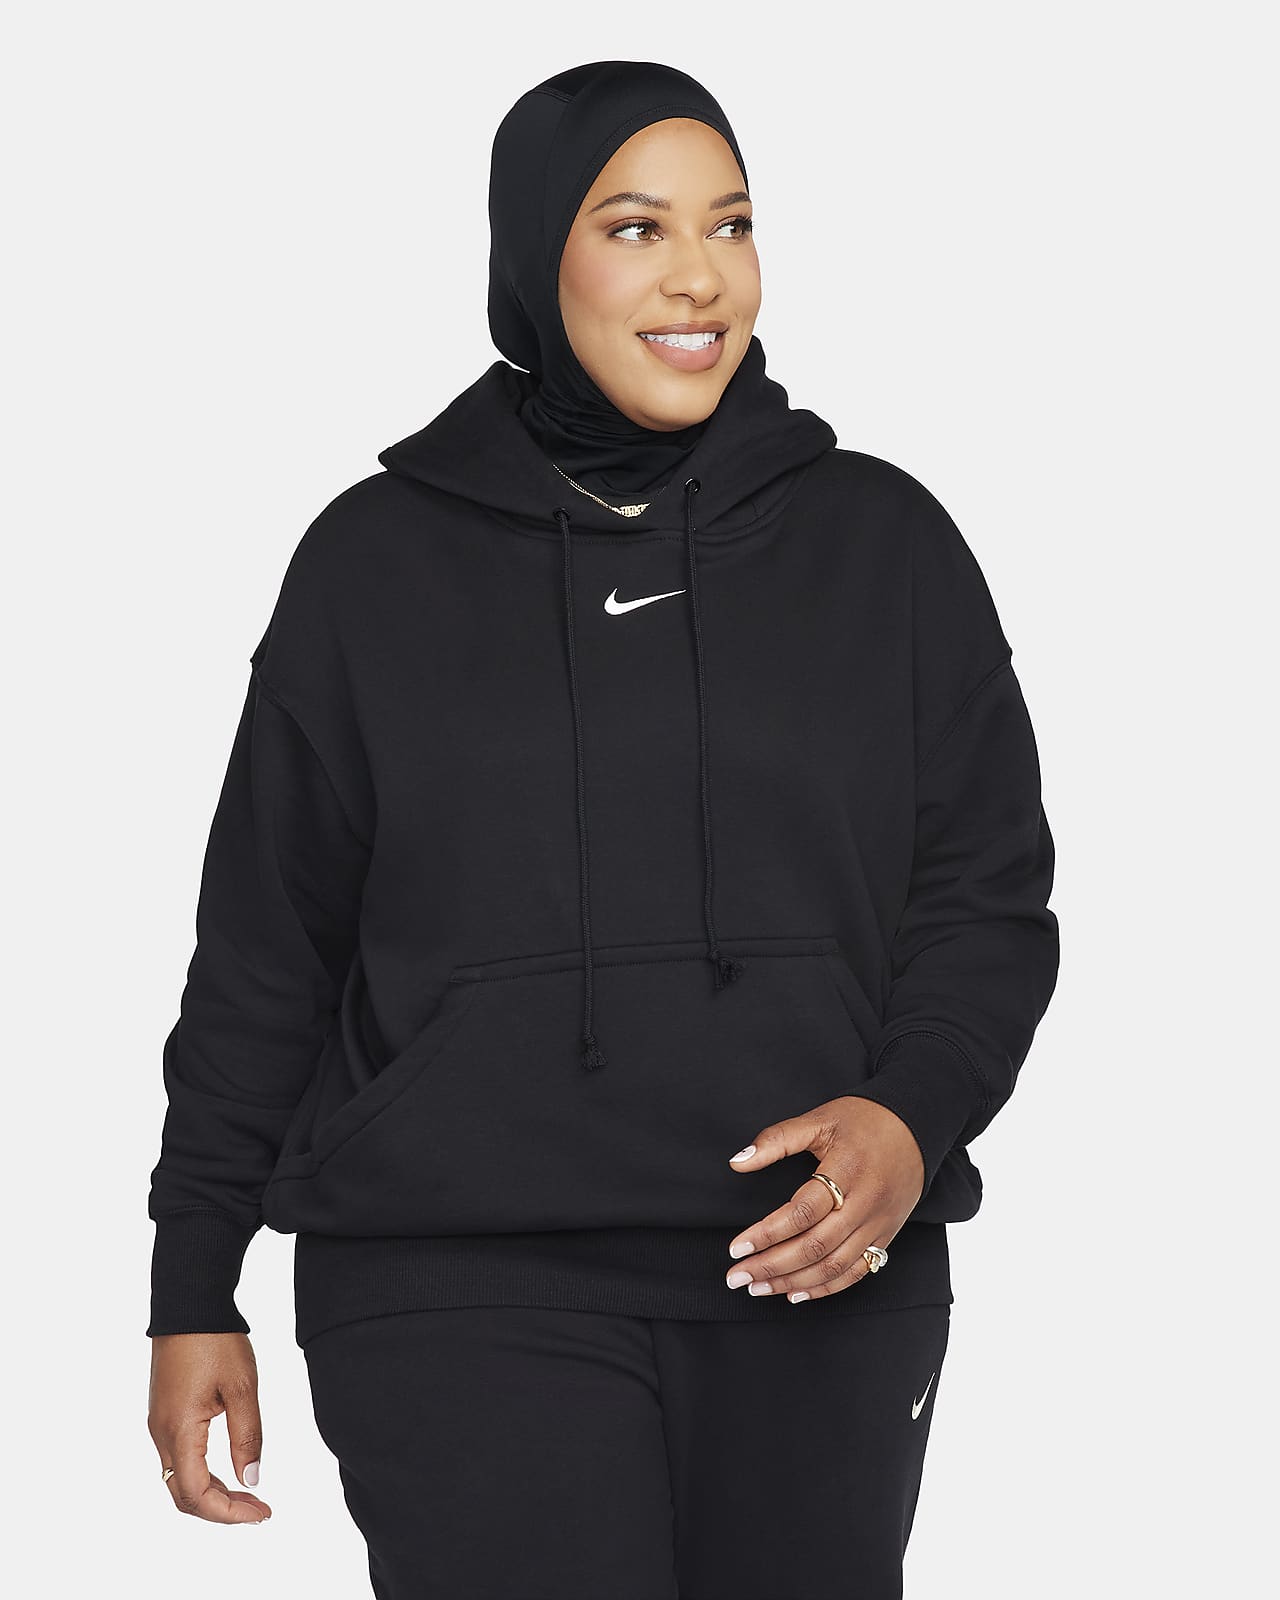 Nike Sportswear Phoenix Fleece Bol Kesimli Kadın Kapüşonlu Sweatshirt'ü